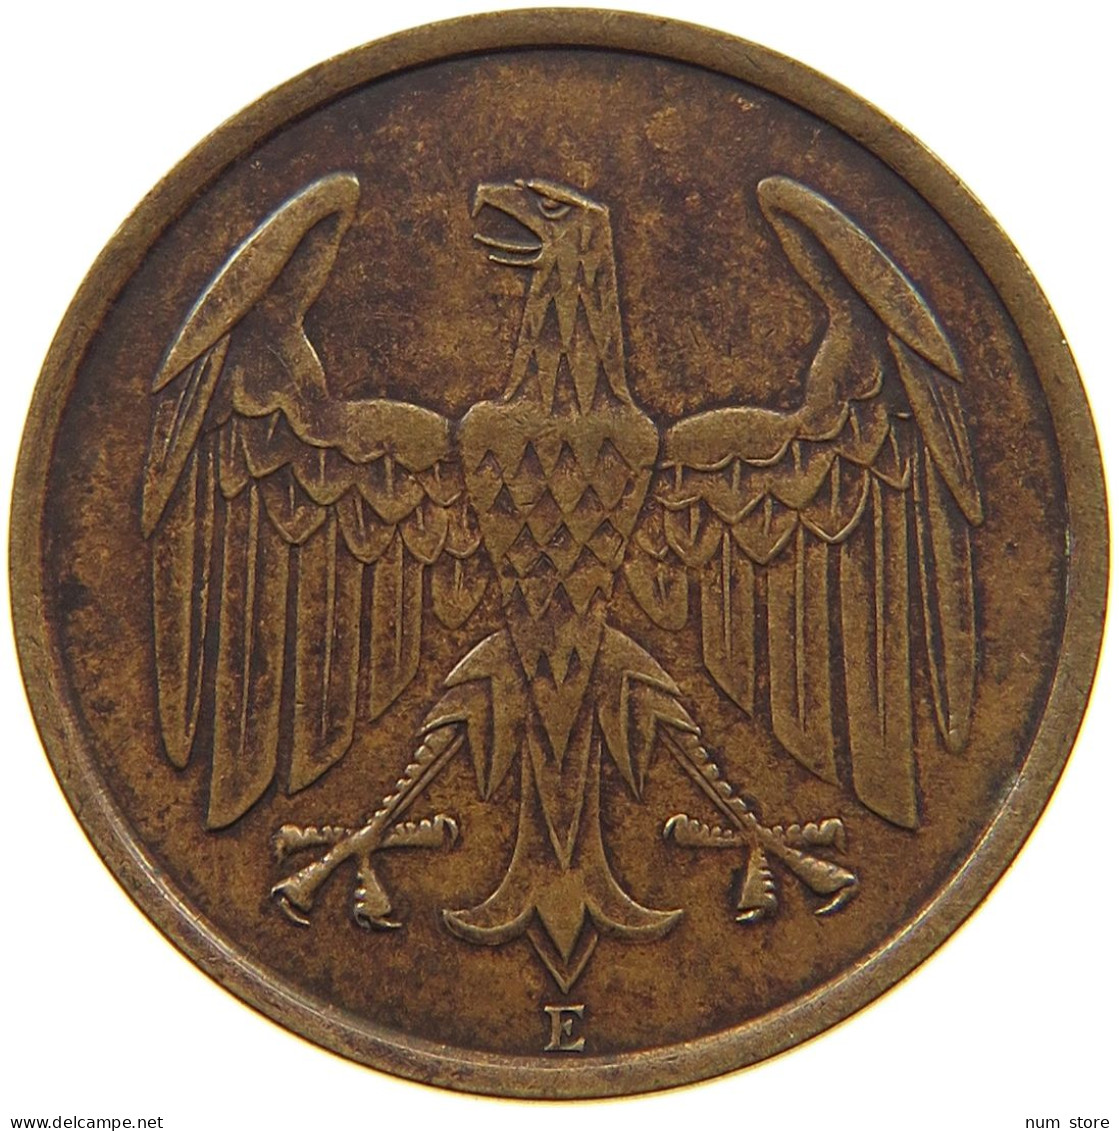 WEIMAR 4 PFENNIG 1932 E J.315, 4 REICHSPFENNIG 1932 #MA 001998 - 4 Reichspfennig